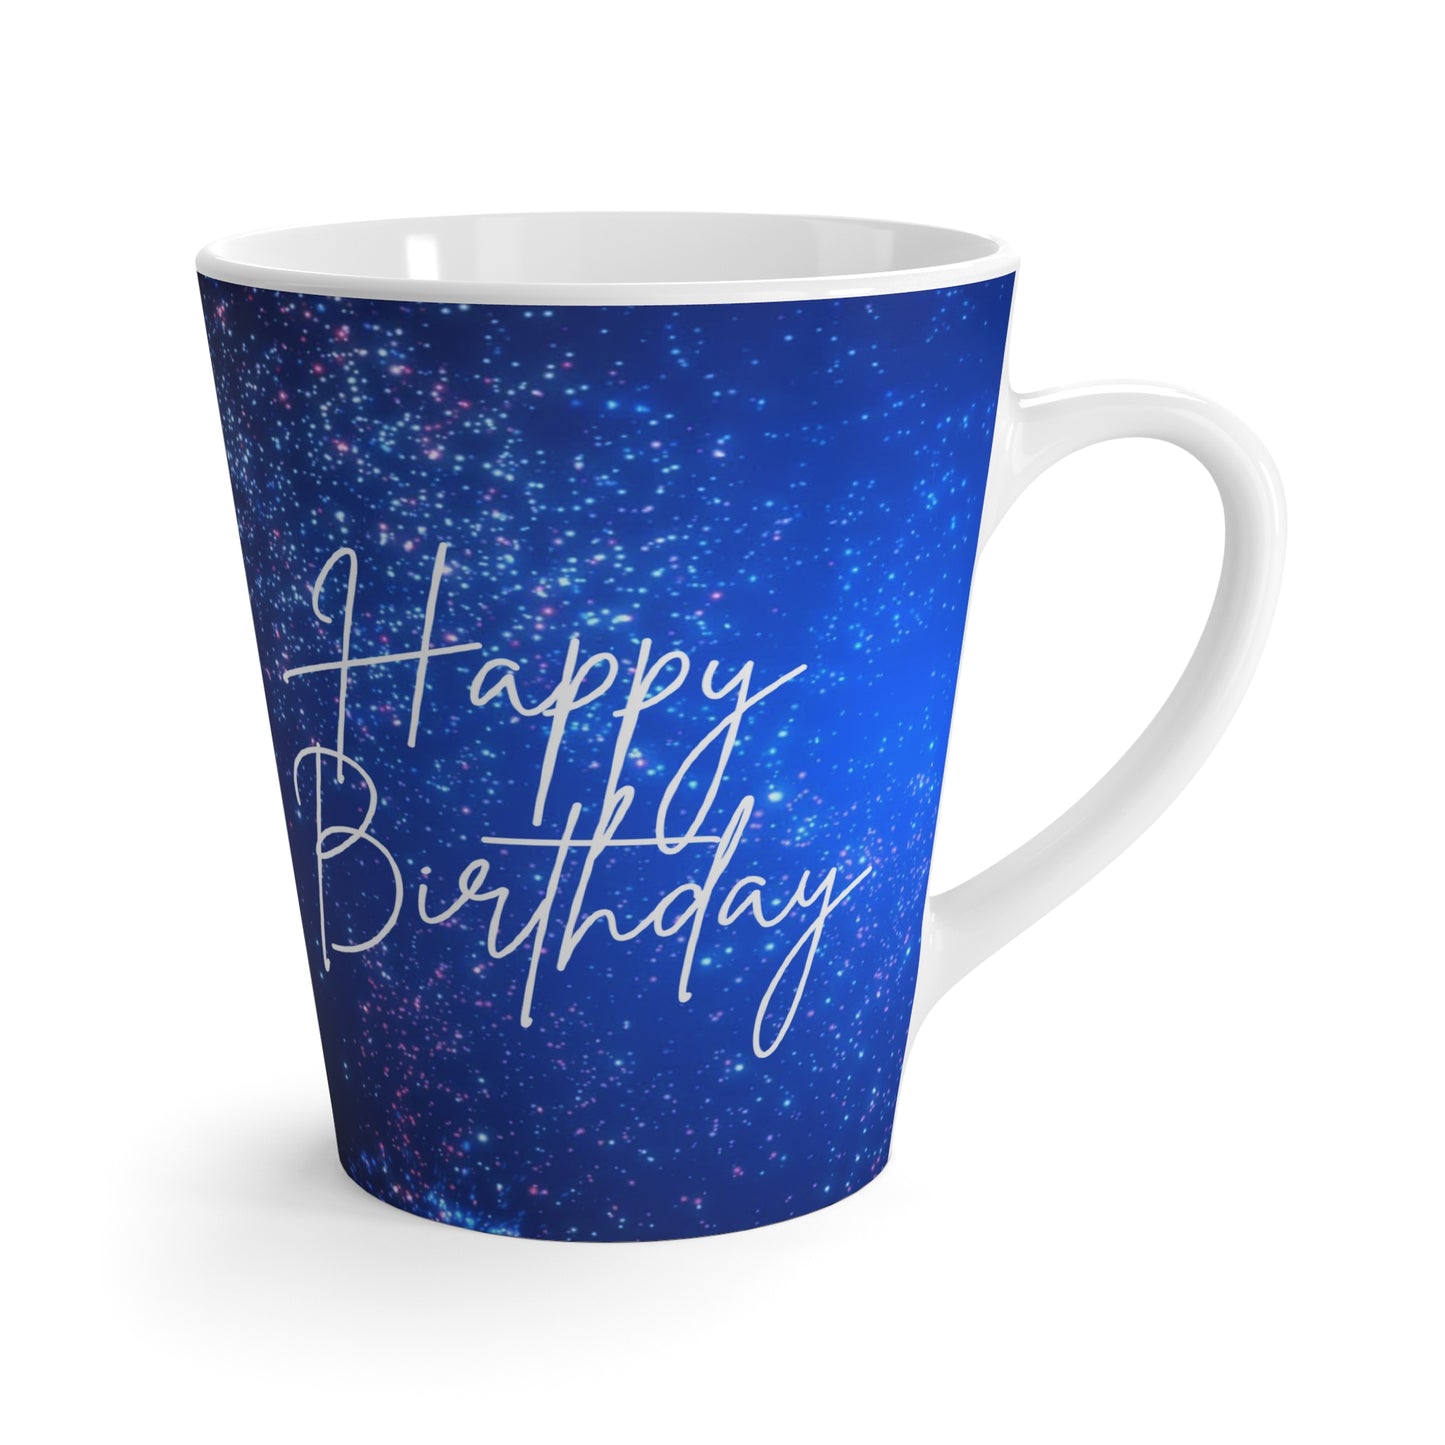 Happy Birthday Latte Mug, 12oz, Happy Birthday Printed Latte Mug